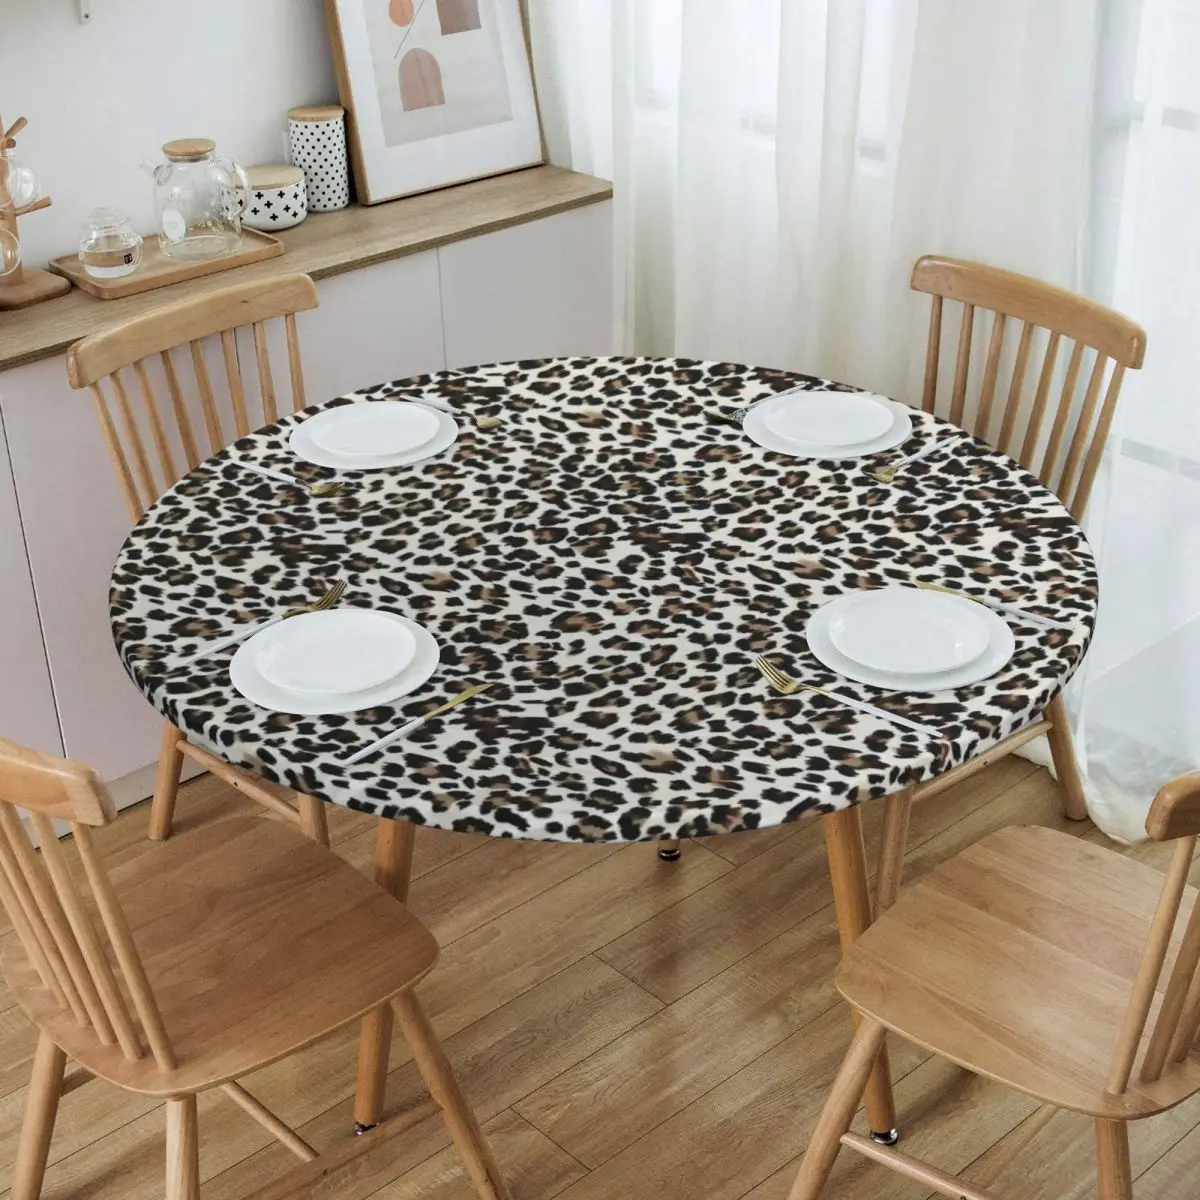 

Круглая скатерть с леопардовым принтом, водонепроницаемая ткань для стола, 45-50 дюймов, с Эластичной каймой